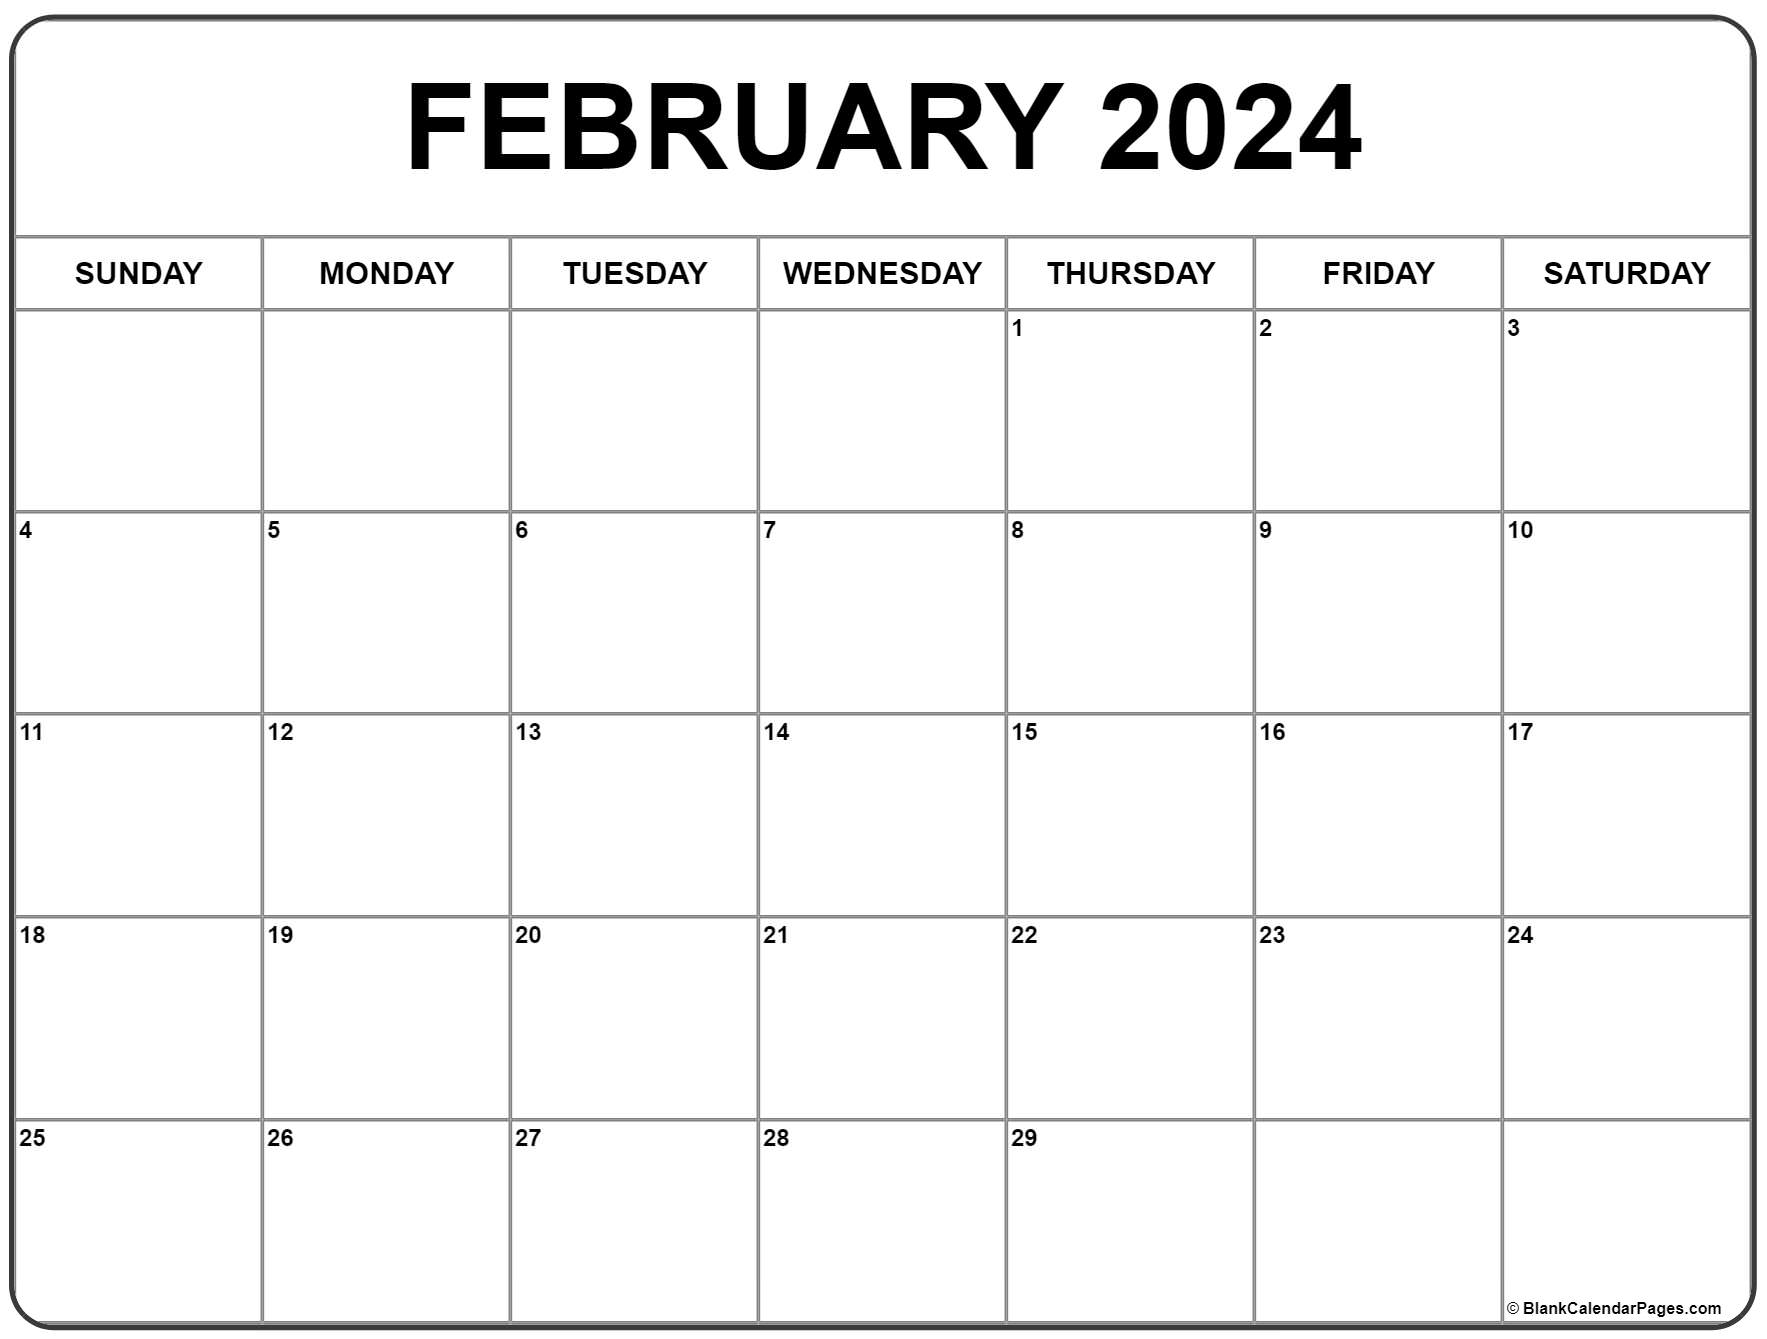 February 2024 Calendar | Free Printable Calendar for Monthly Printable Calendar February 2024